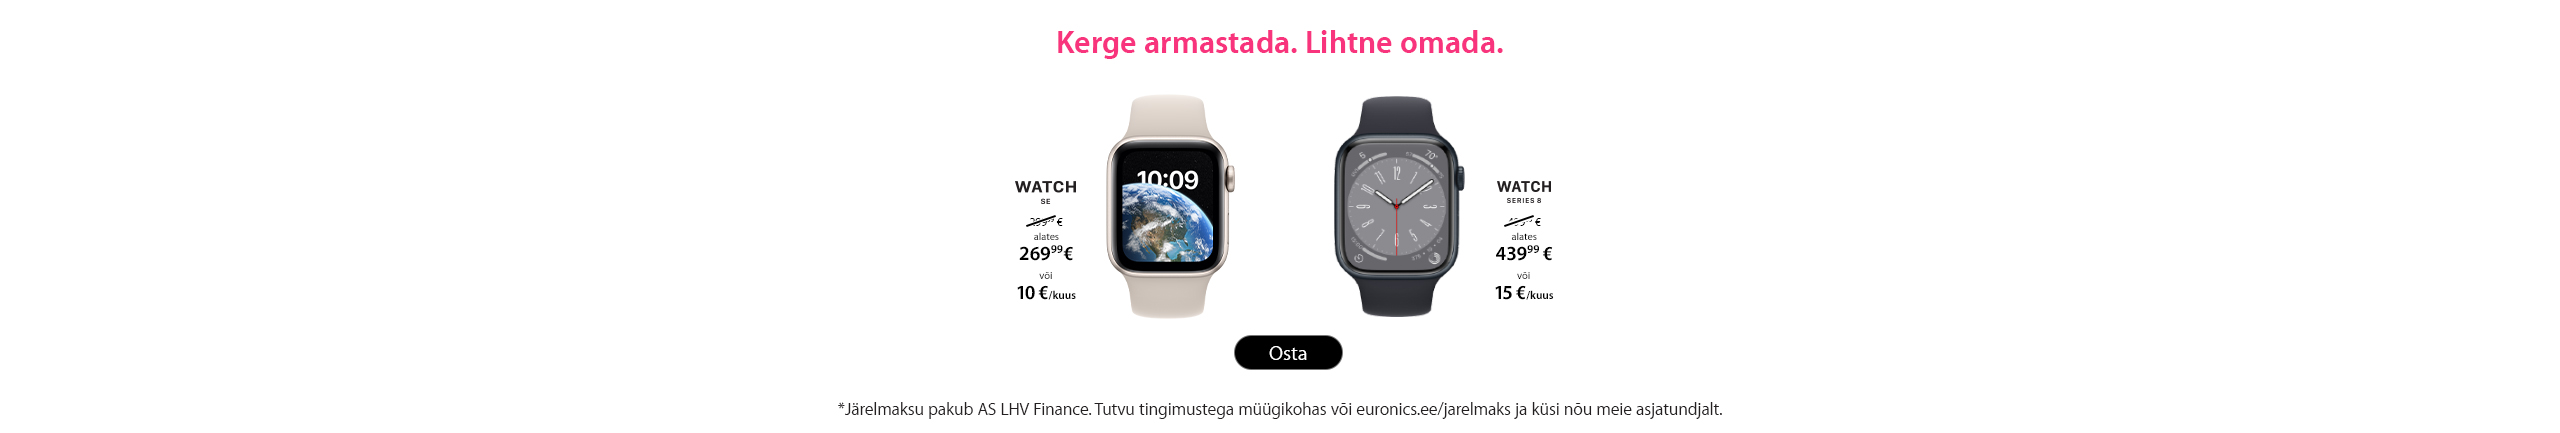 Apple sõbrapäeva pakkumised! Apple Watch